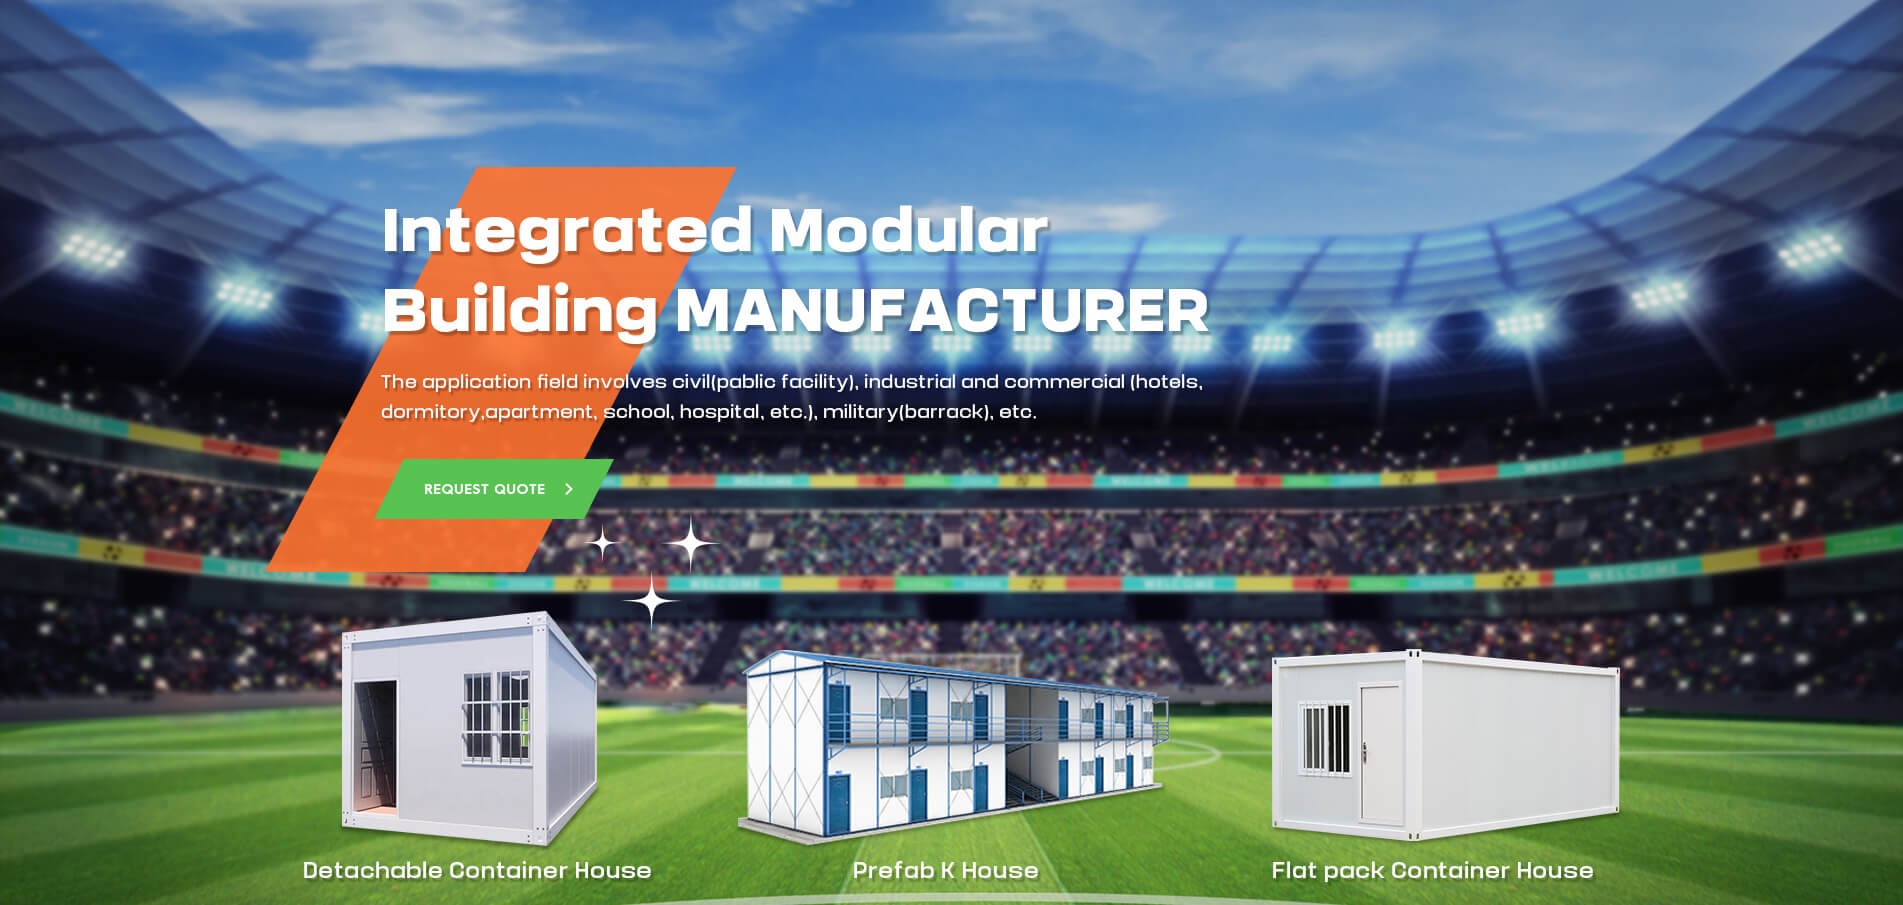 Fabricante de edificios modulares integrados